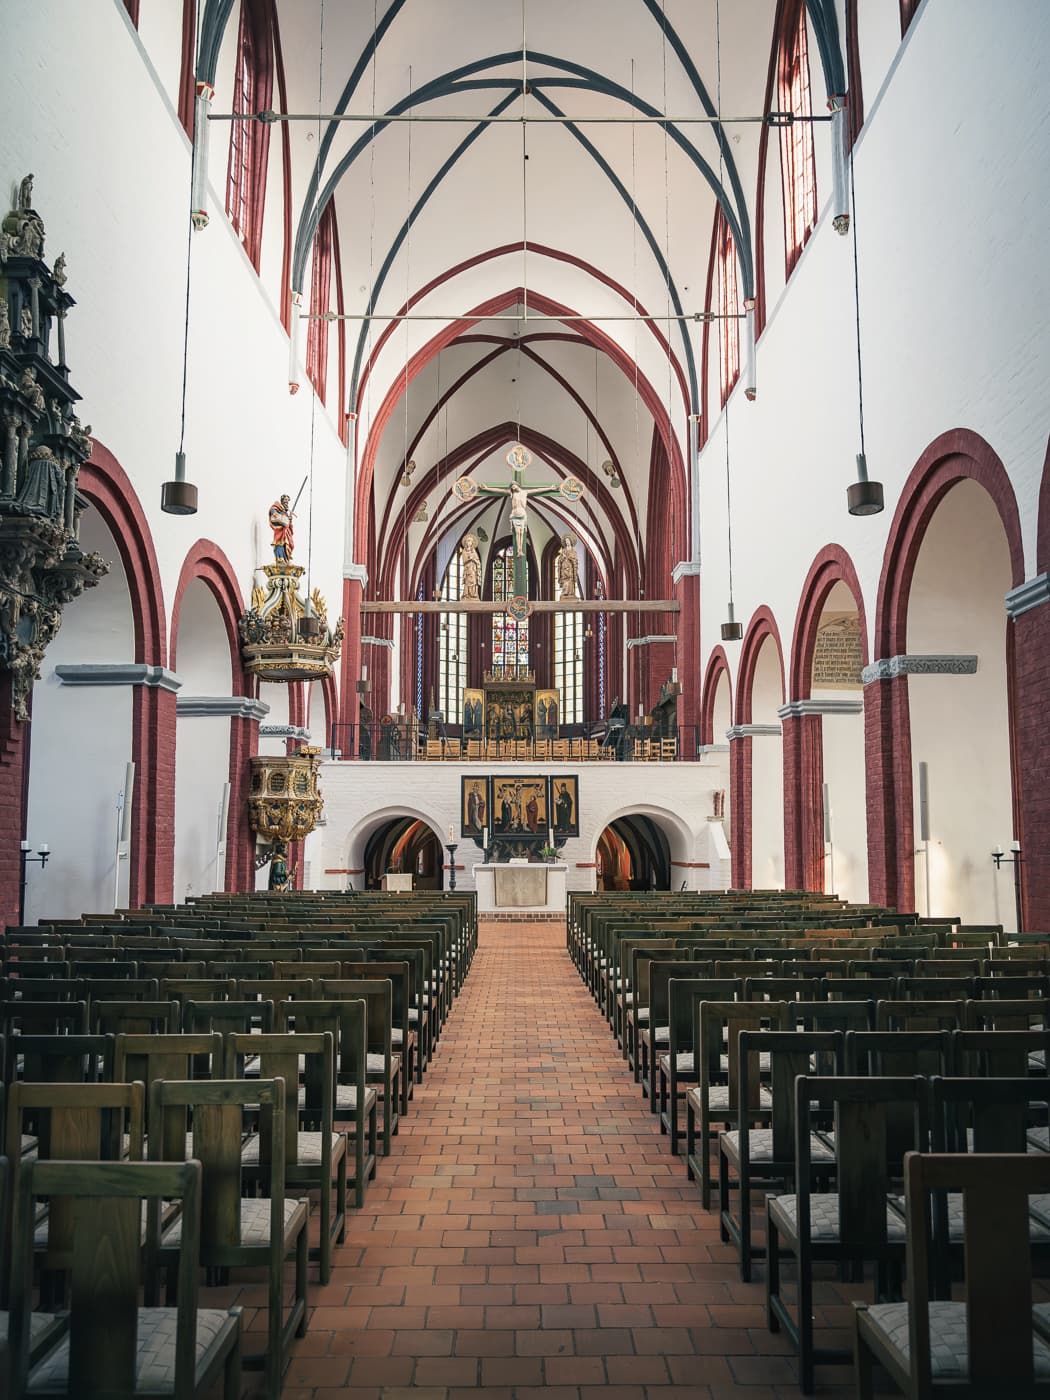 Innenraum einer Kirche mit Rund- und Spitzbögen, vielen Stühlen und einem Altar.